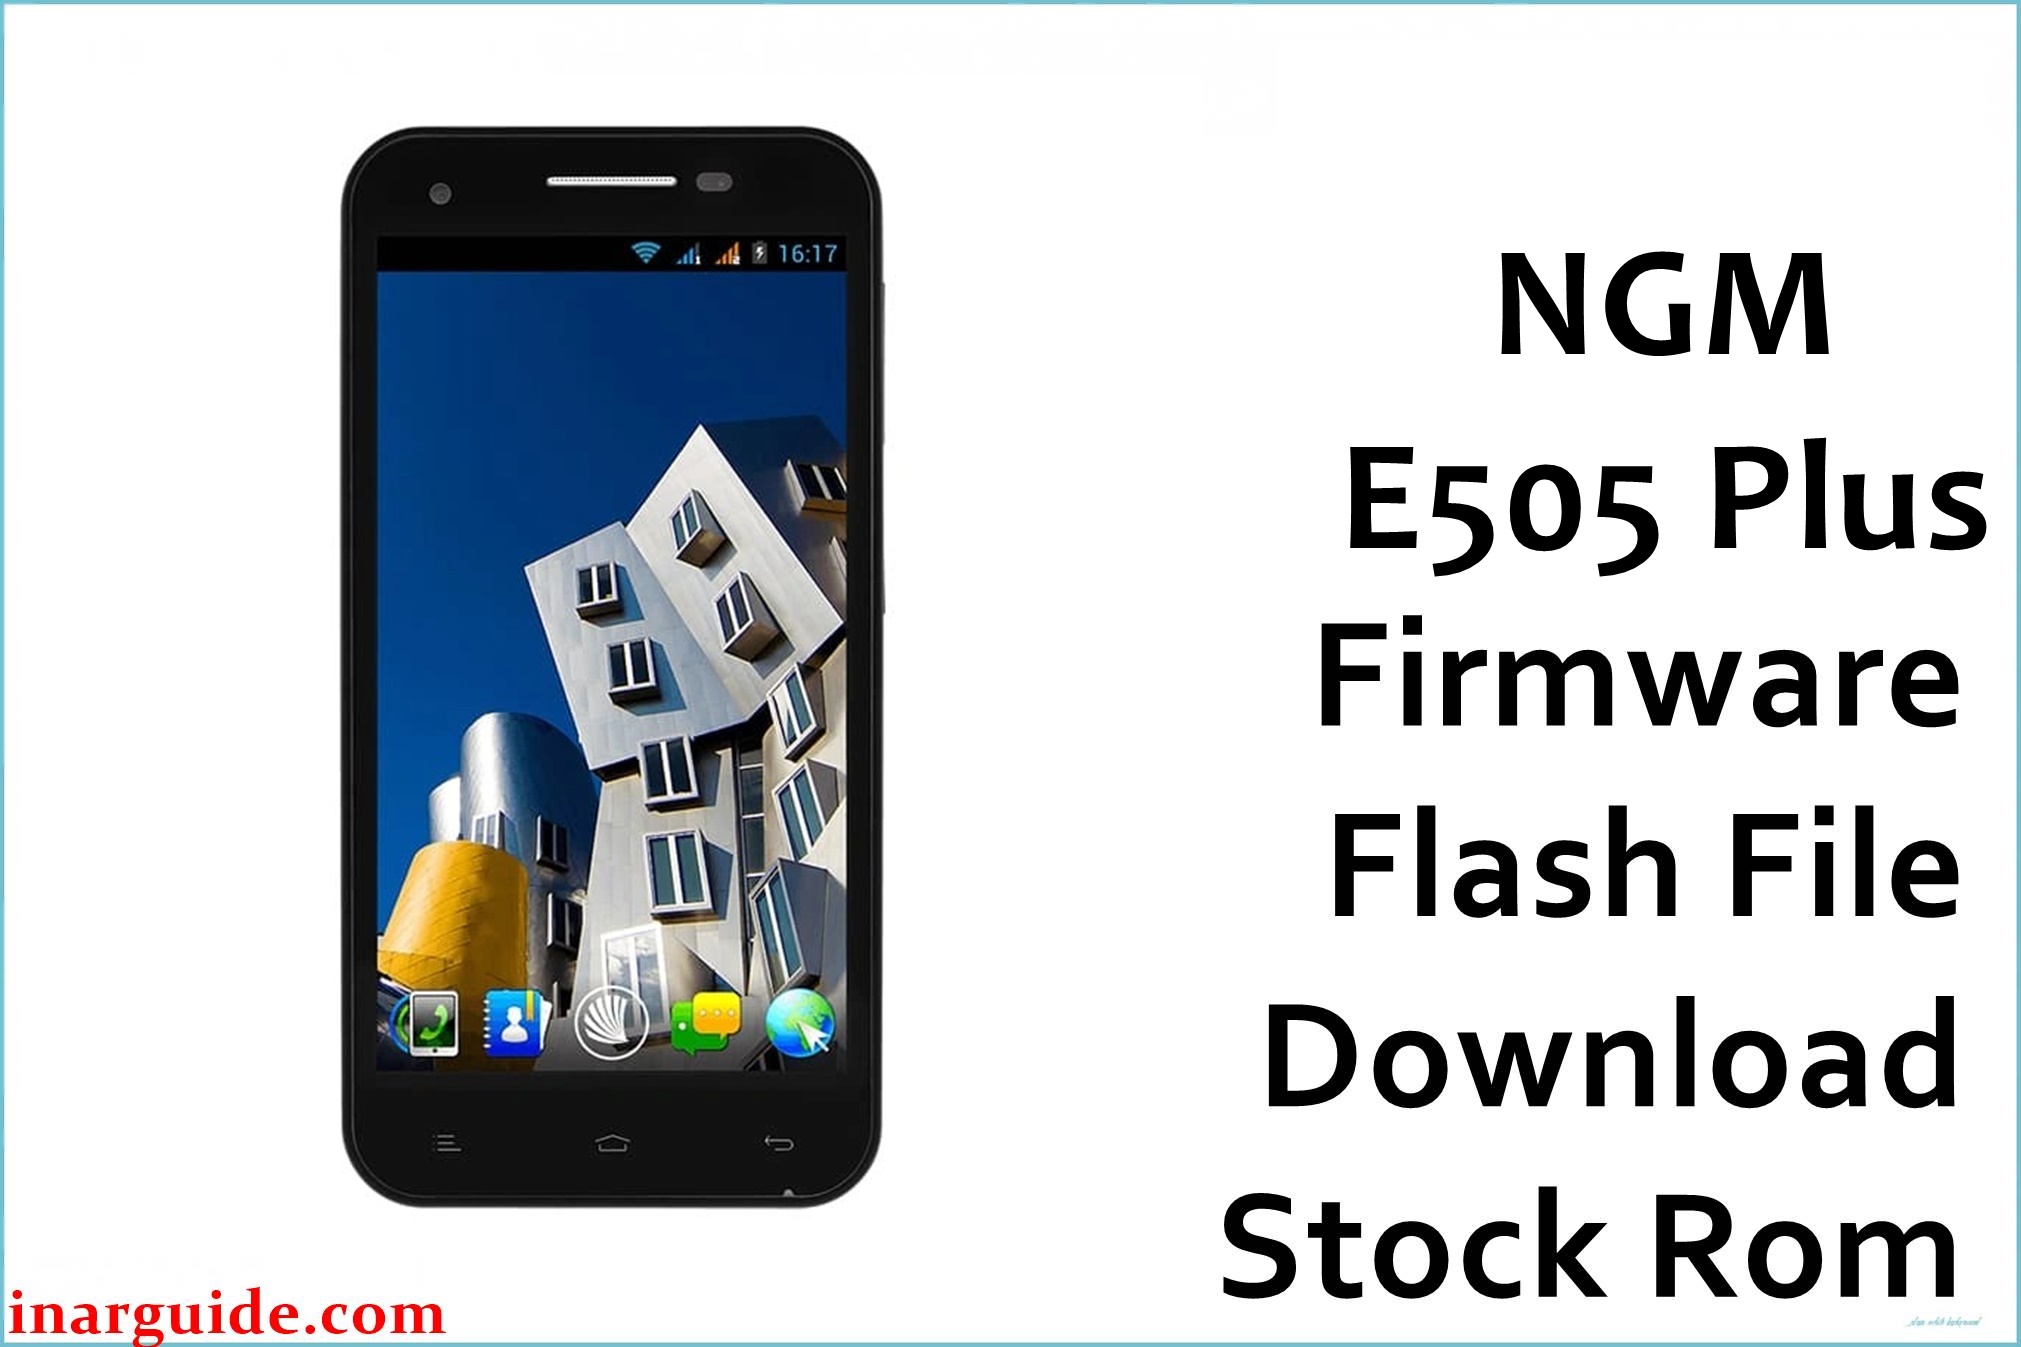 NGM E505 Plus